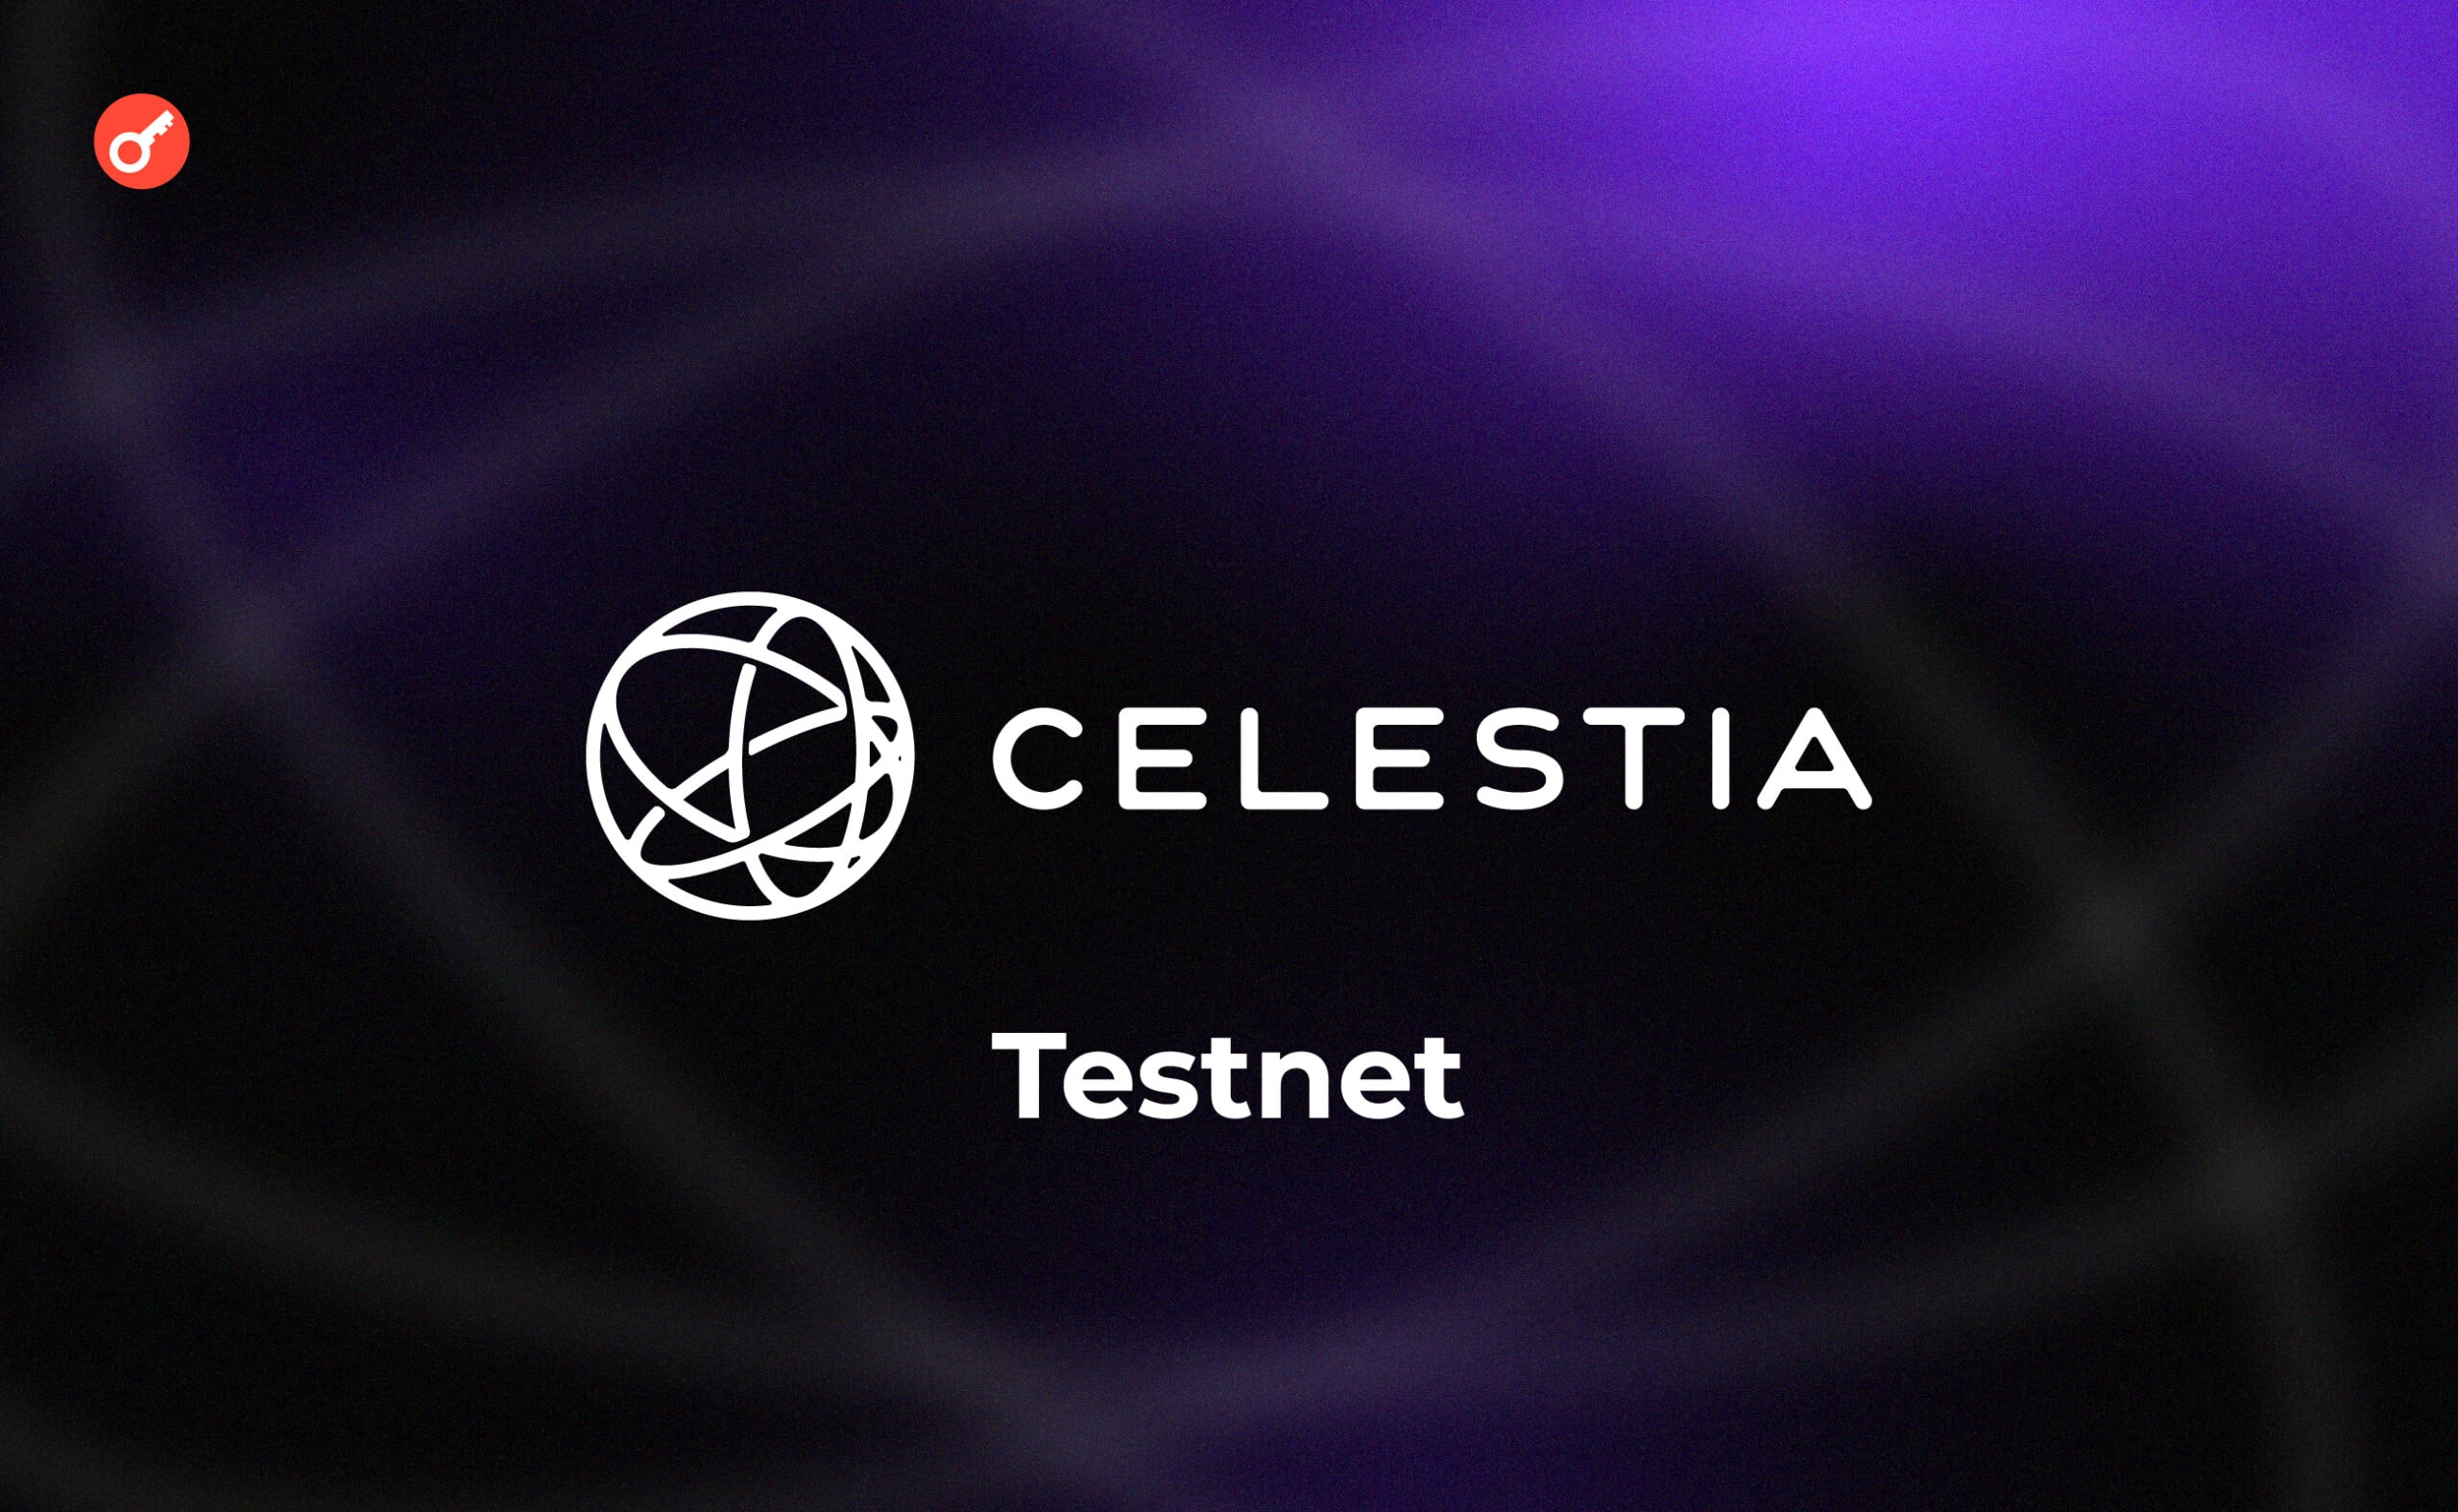 Celestia тестнет: обзор на доступные активности в сети. Заглавный коллаж статьи.